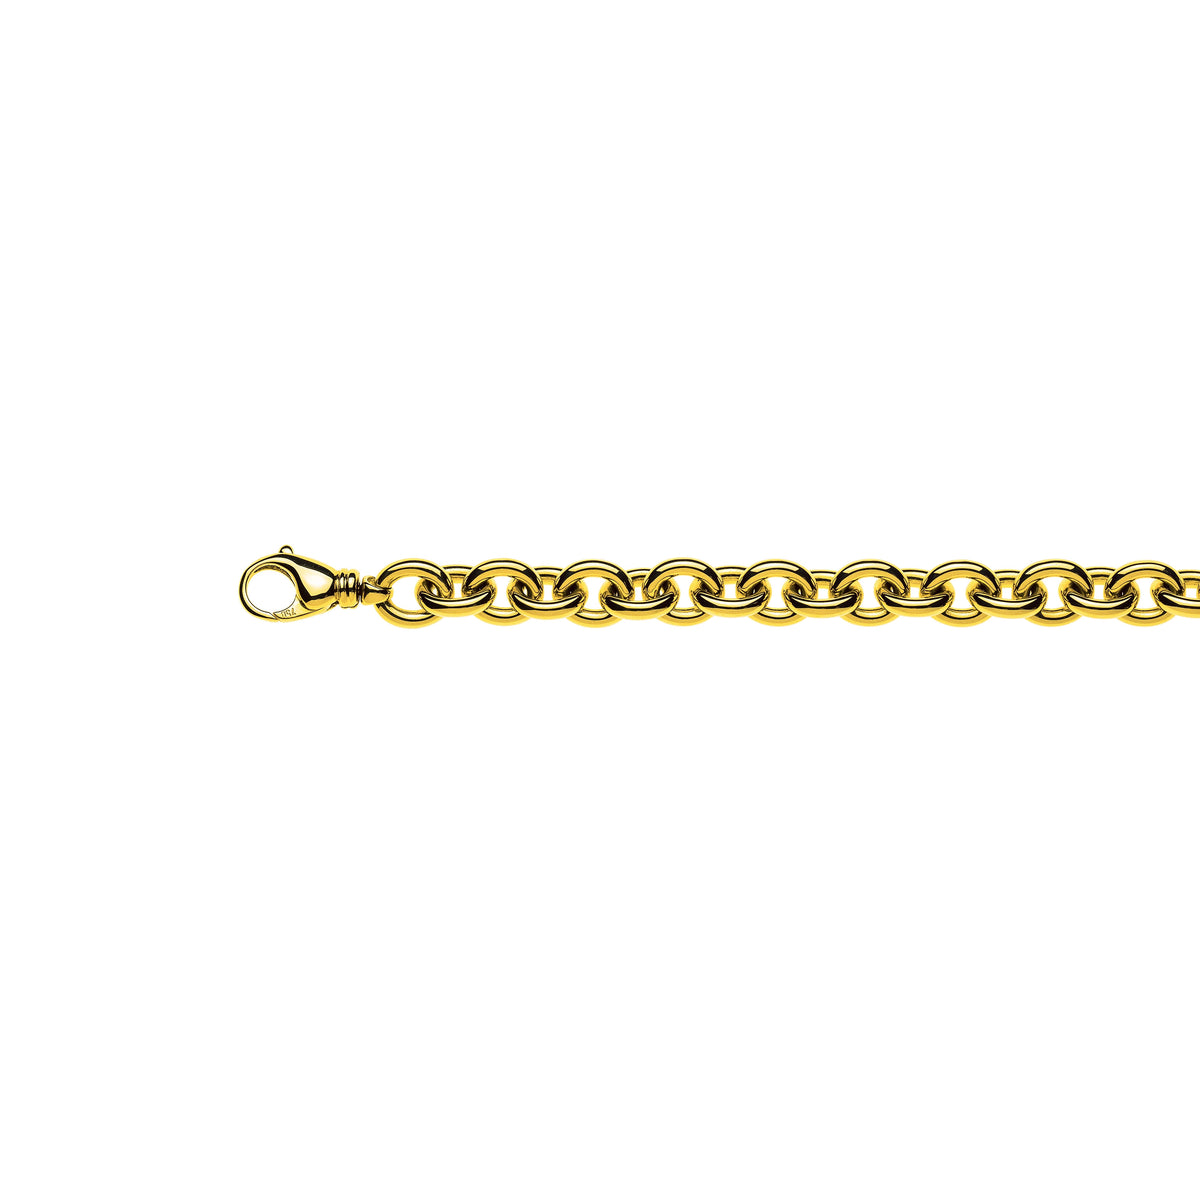 Handgefertigtes Halskette: Ovaler Anker aus Gelbgold 750, 45cm, 11,0mm